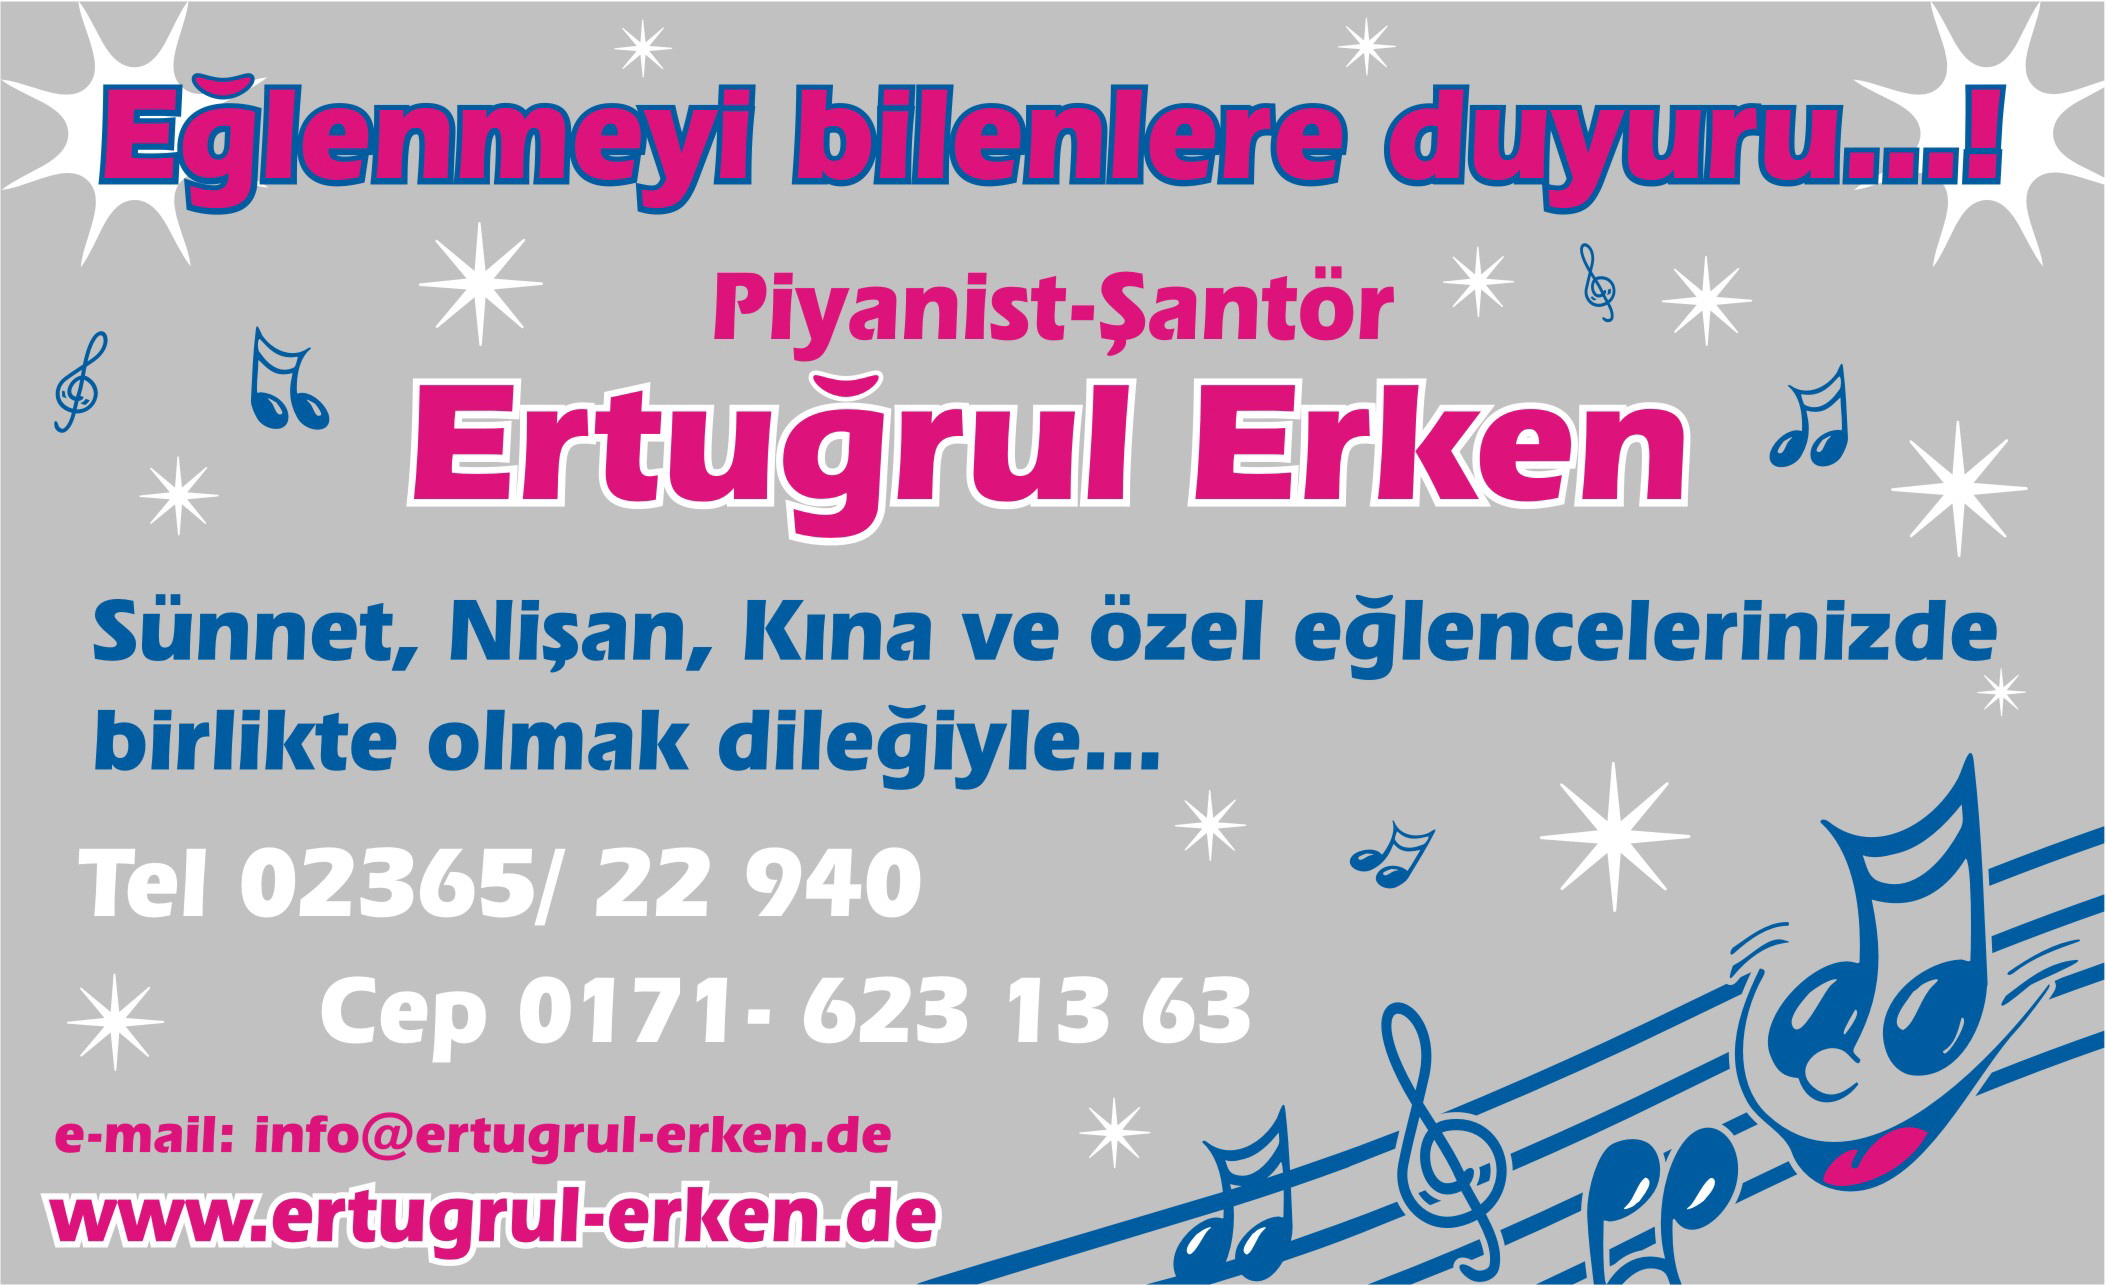 Piyanist-Santr Ertugrul Erken - 45772 Marl (NRW)/Almanya